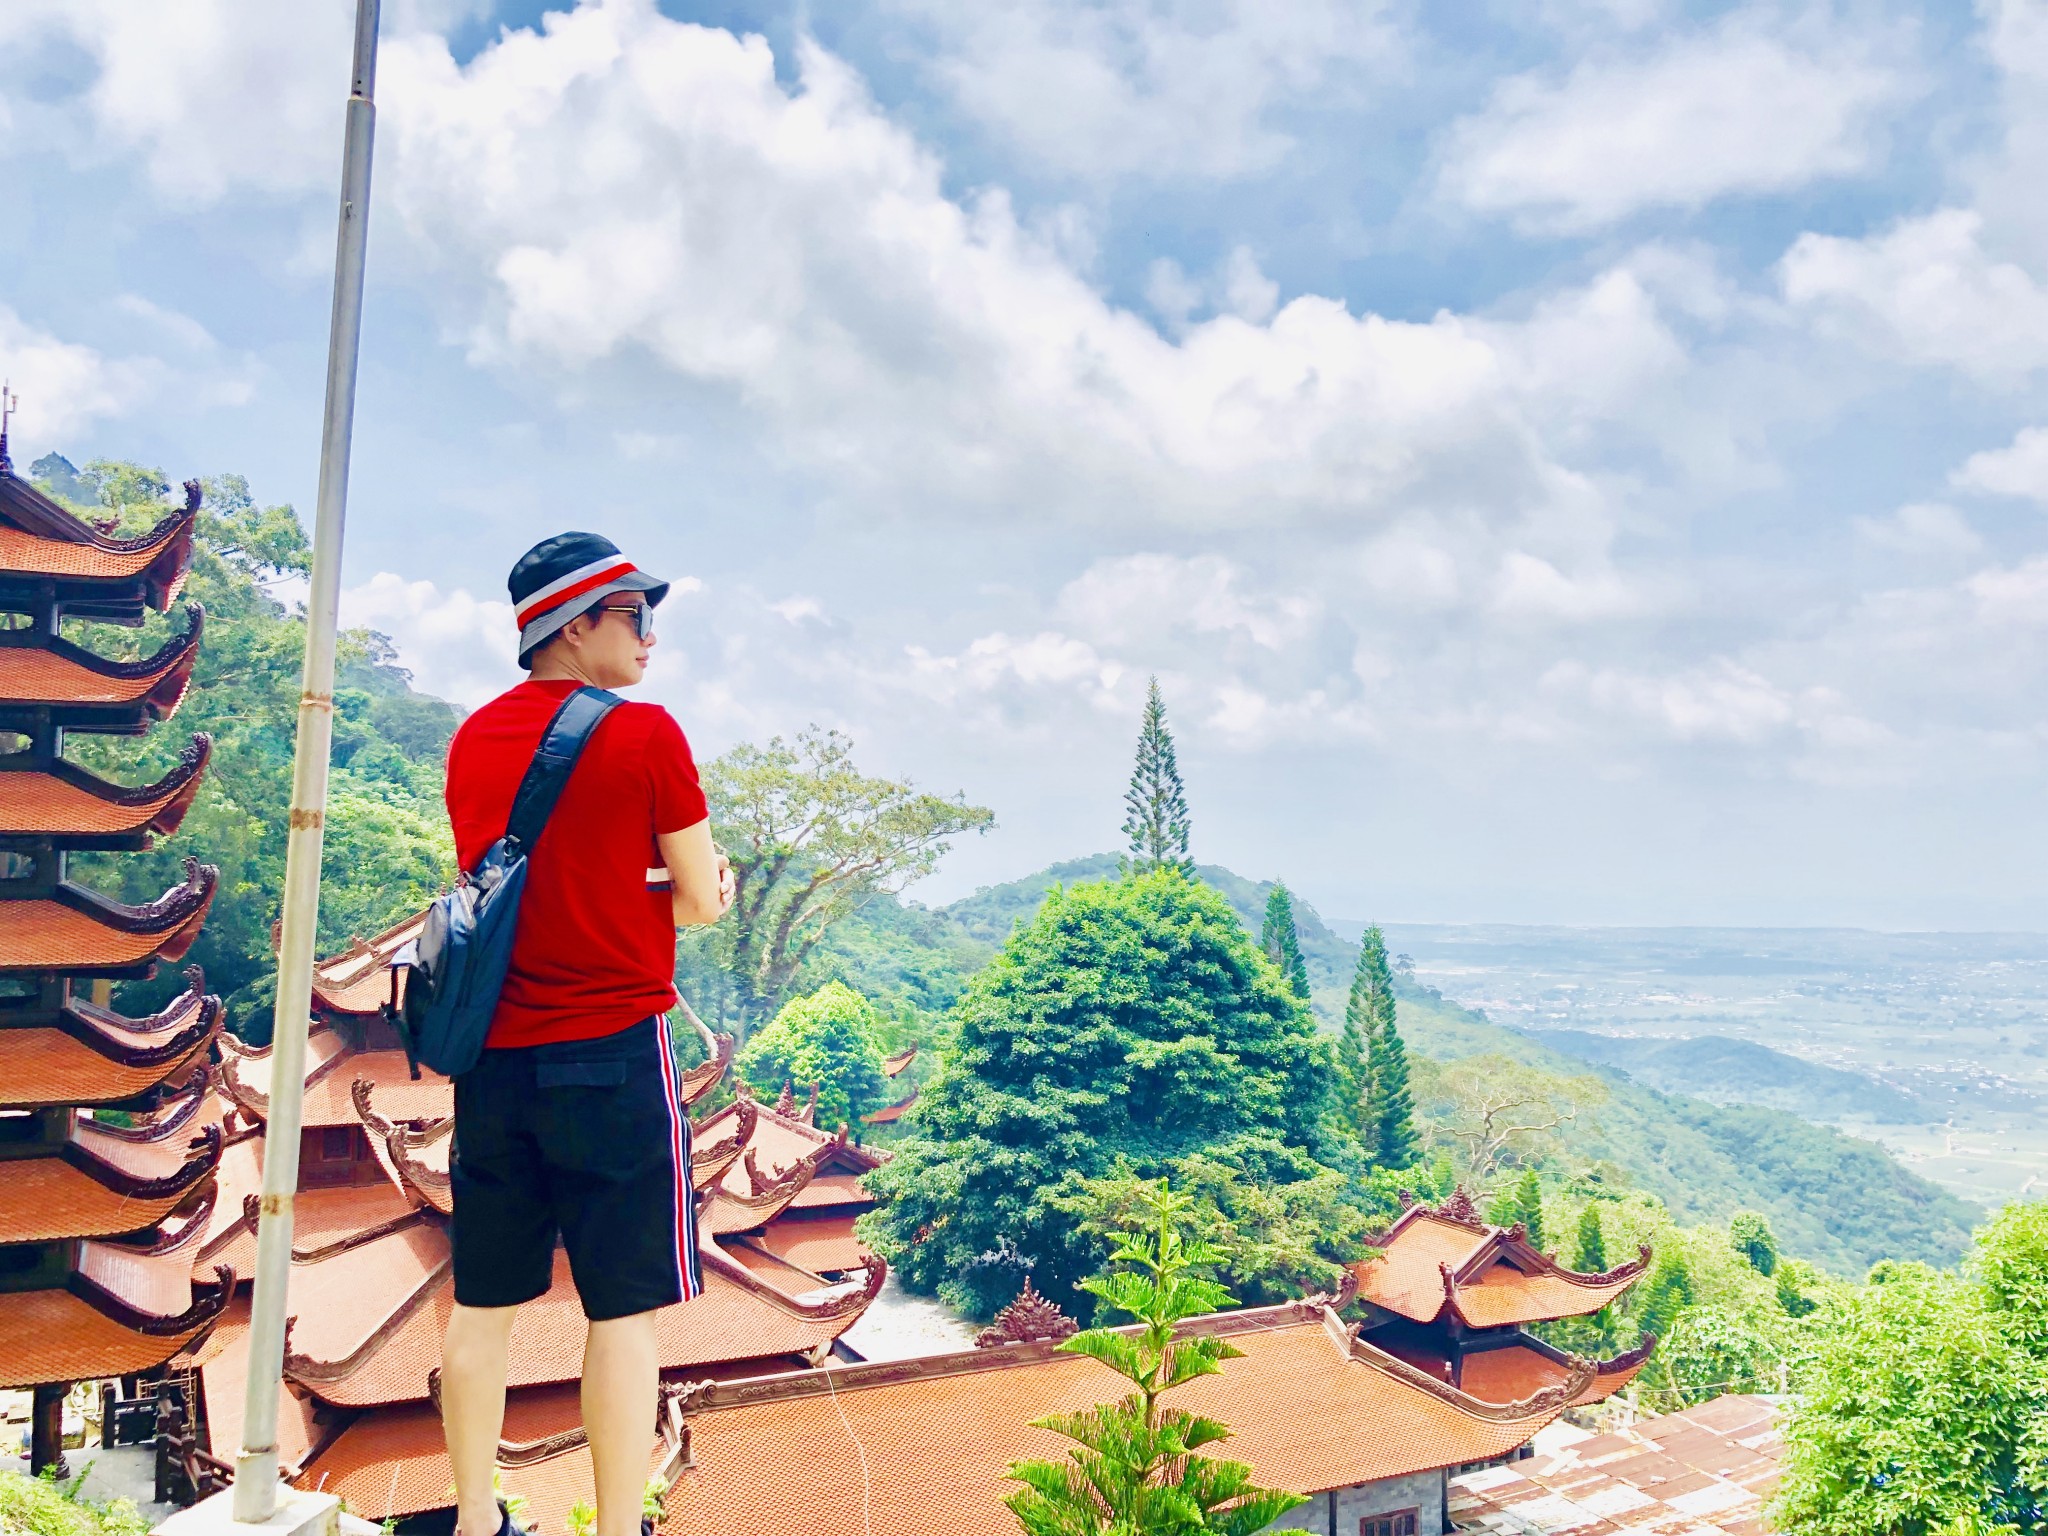 khung canh nen tho ben duoi nui ta cu - Top 10 địa điểm chụp ảnh đẹp nhất ở Phan Thiết